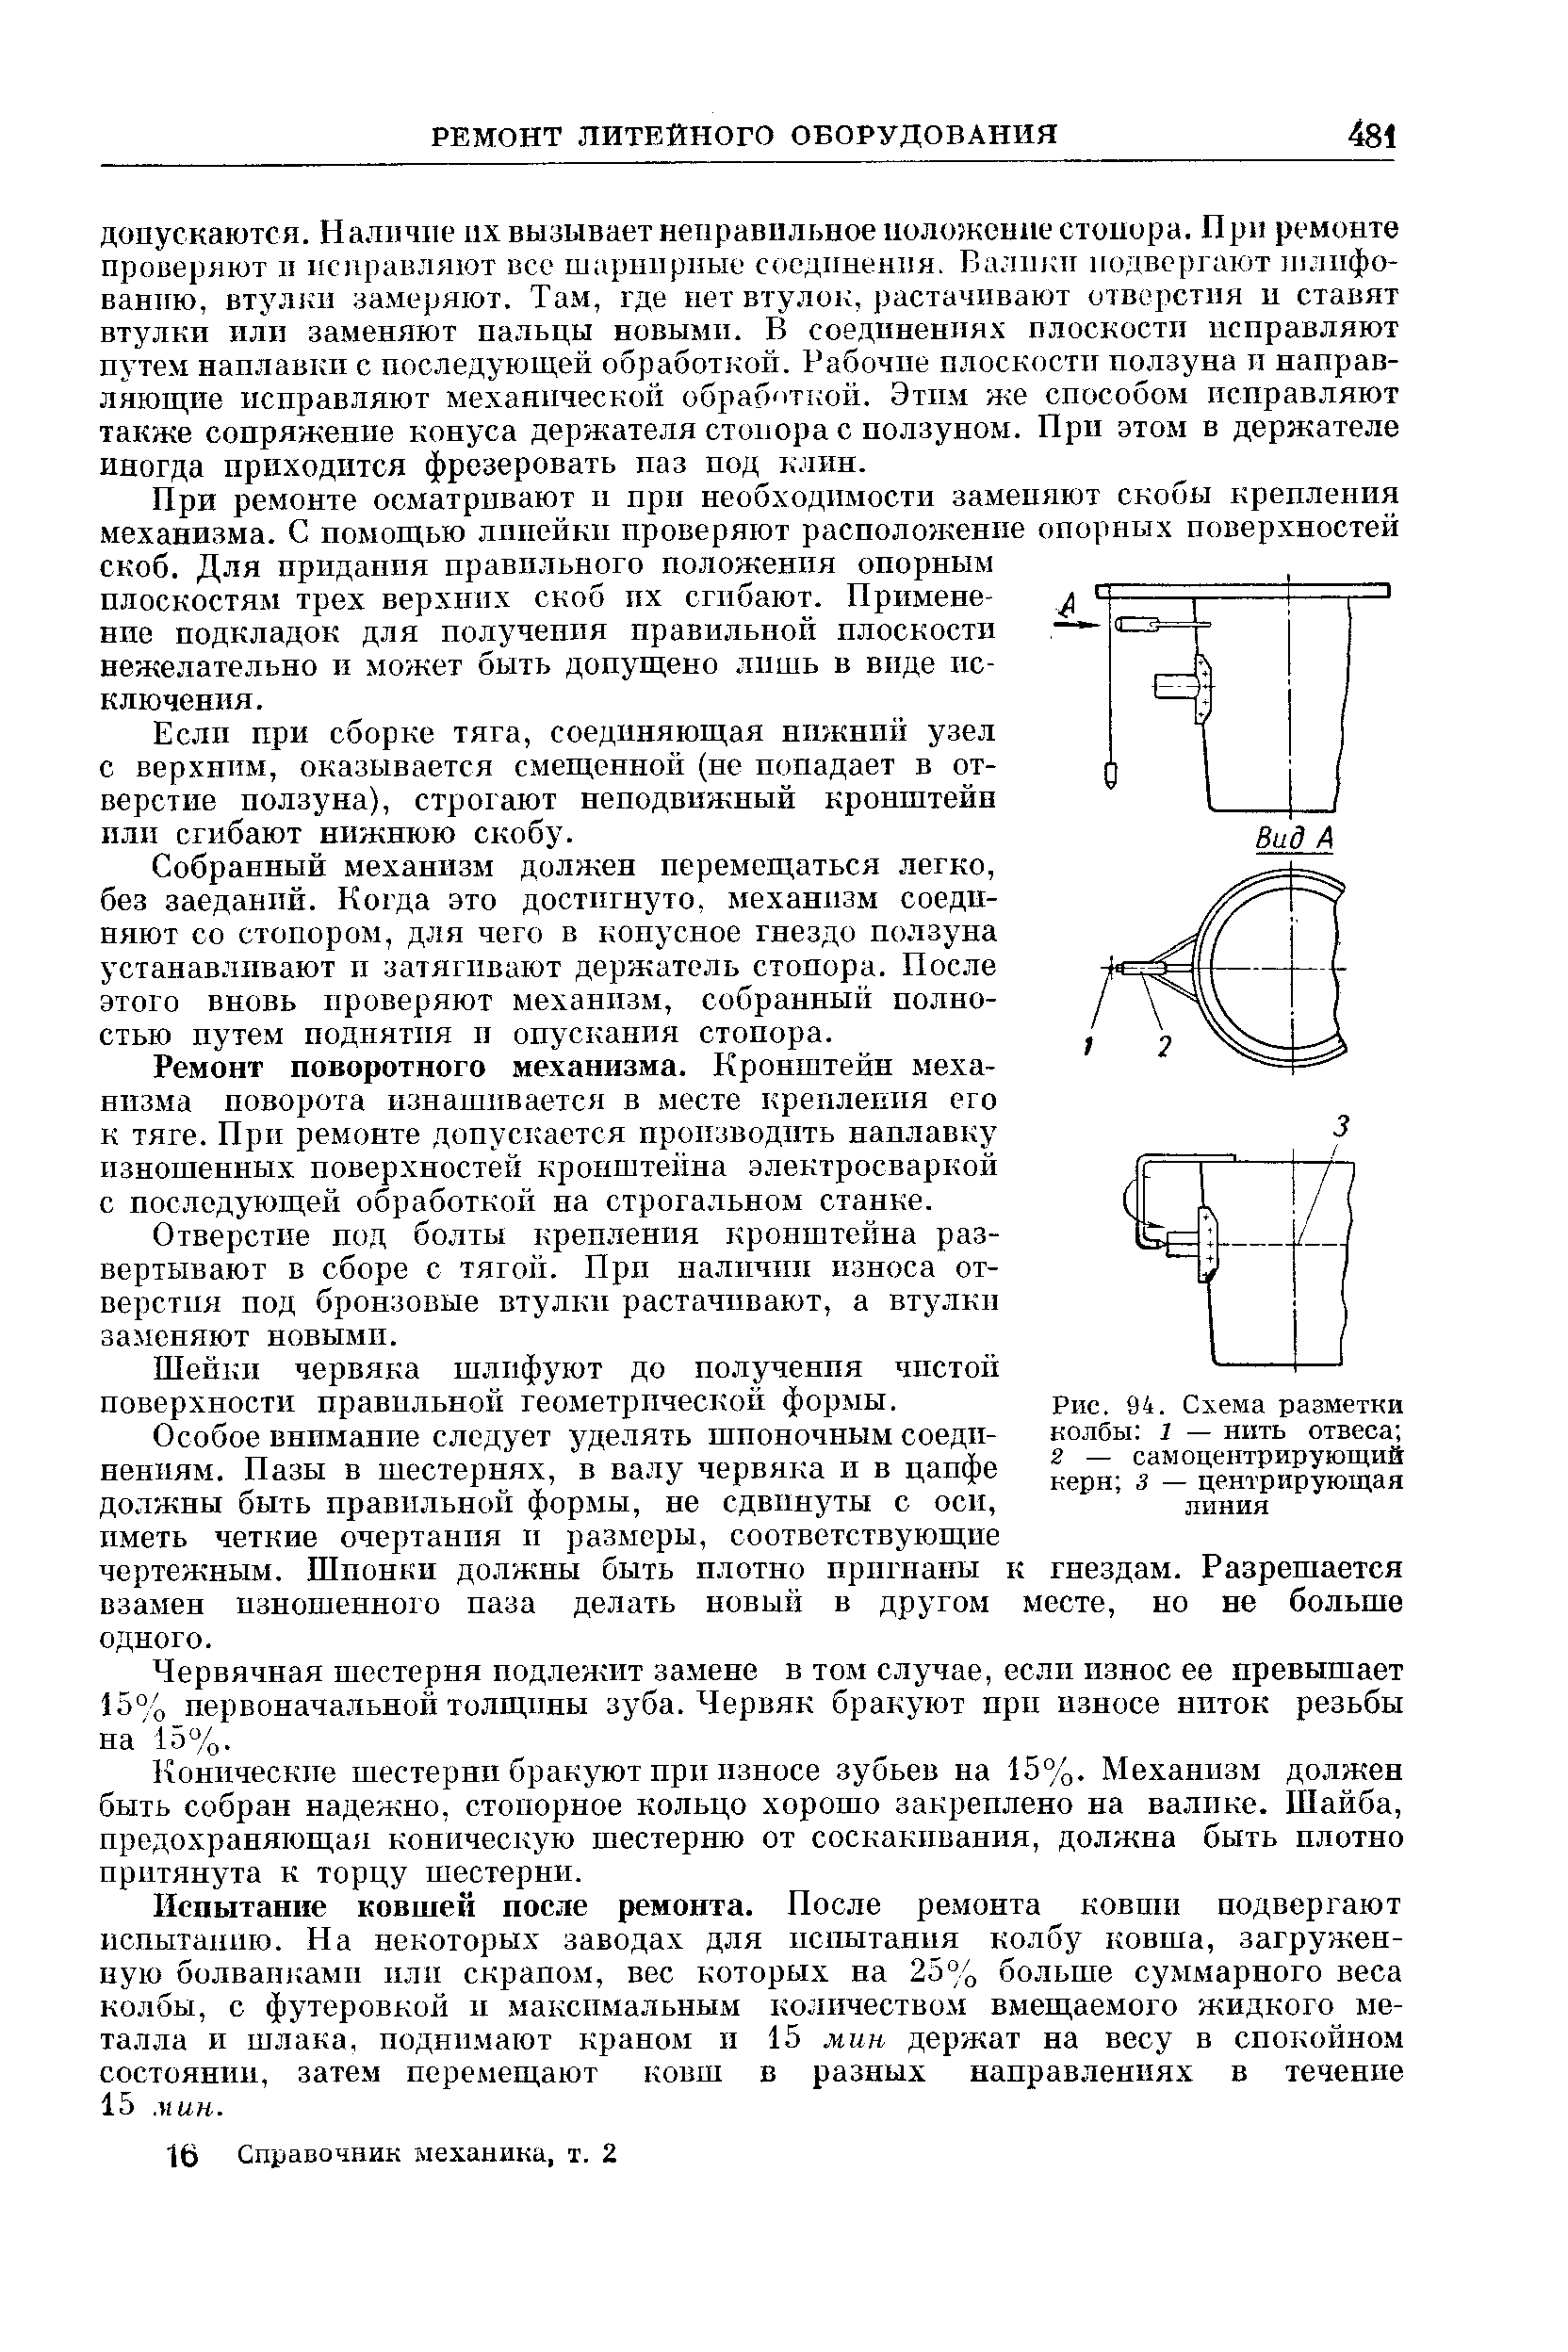 Рис. 94, Схема разметки колбы 1 — нить отвеса 2 — самоцентрирующий керн 3 — центрирующая пиния
